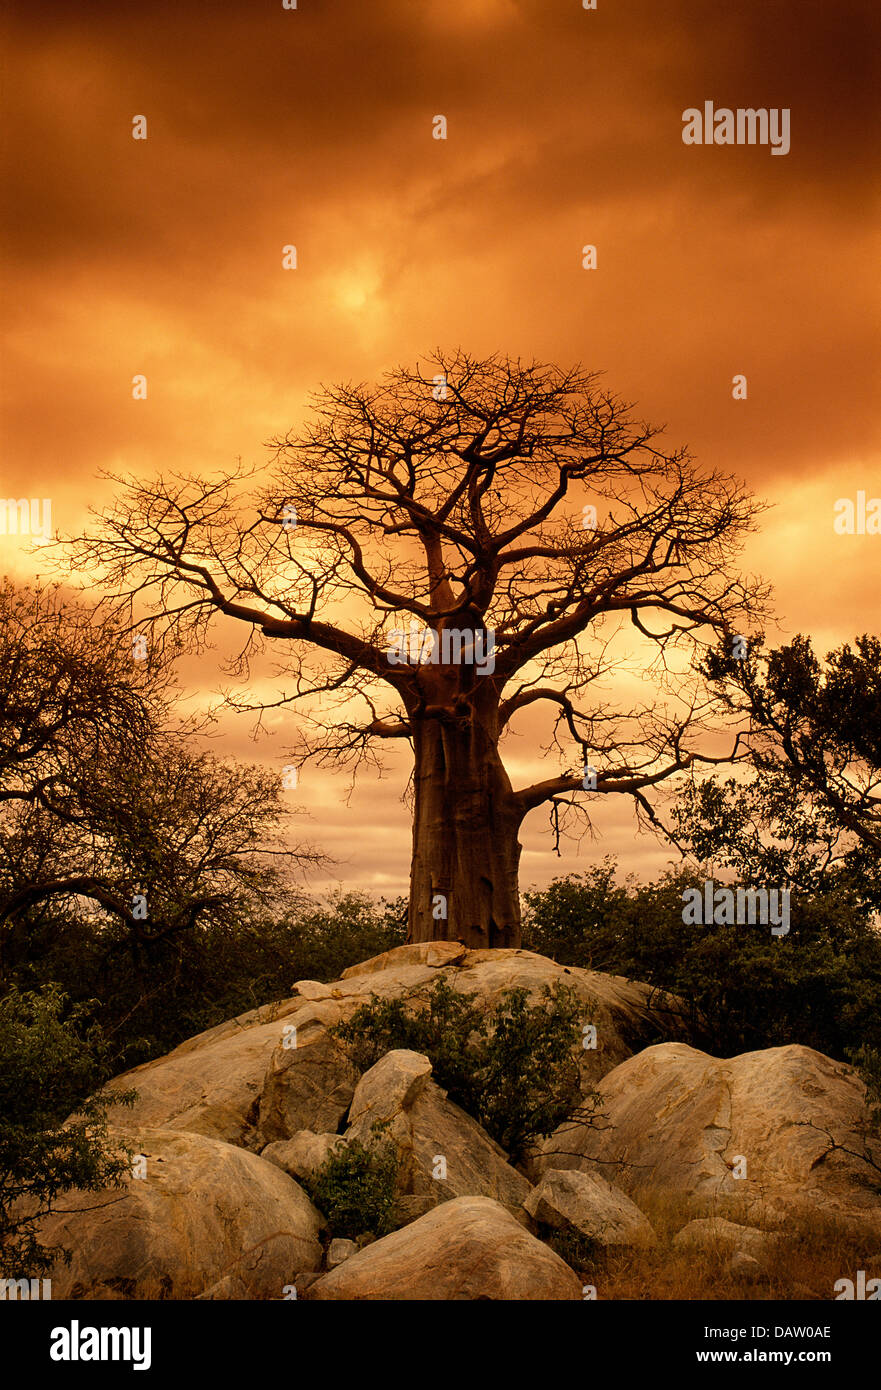 Ein Baobab-Baum gegen einen orangefarbenen Himmel in der Nähe von tanken, Südafrika Stockfoto